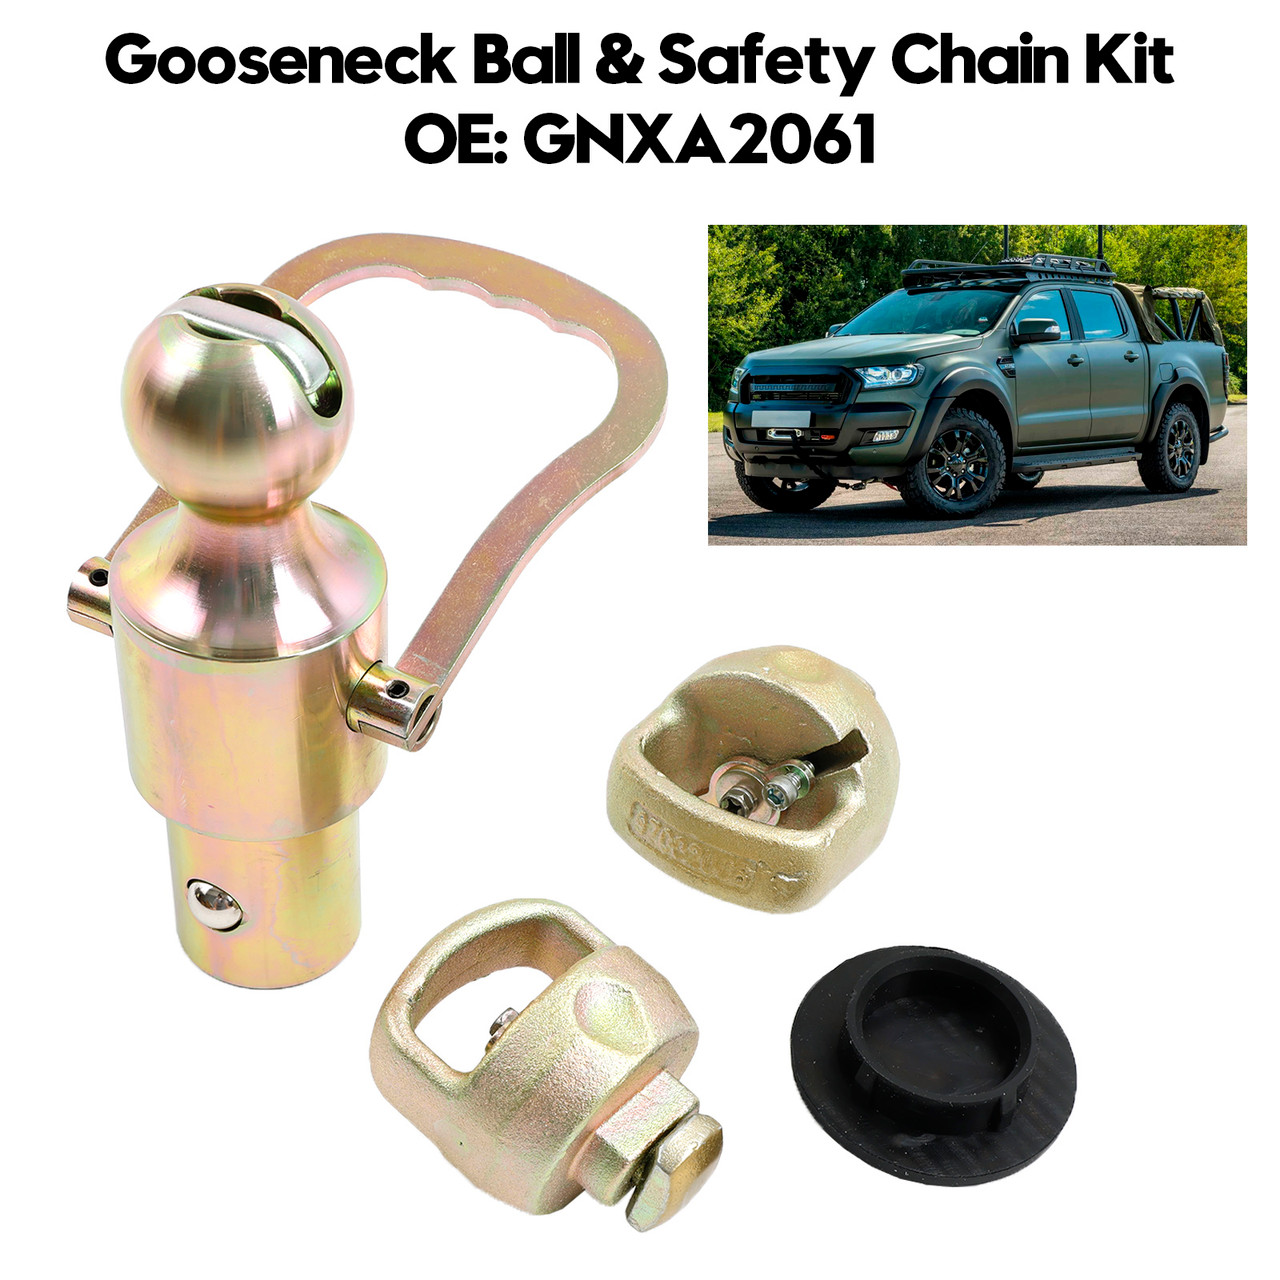 Gooseneck Ball & Safety Chain Kit GNXA2061 for Ford for GM for Nissan Trucks